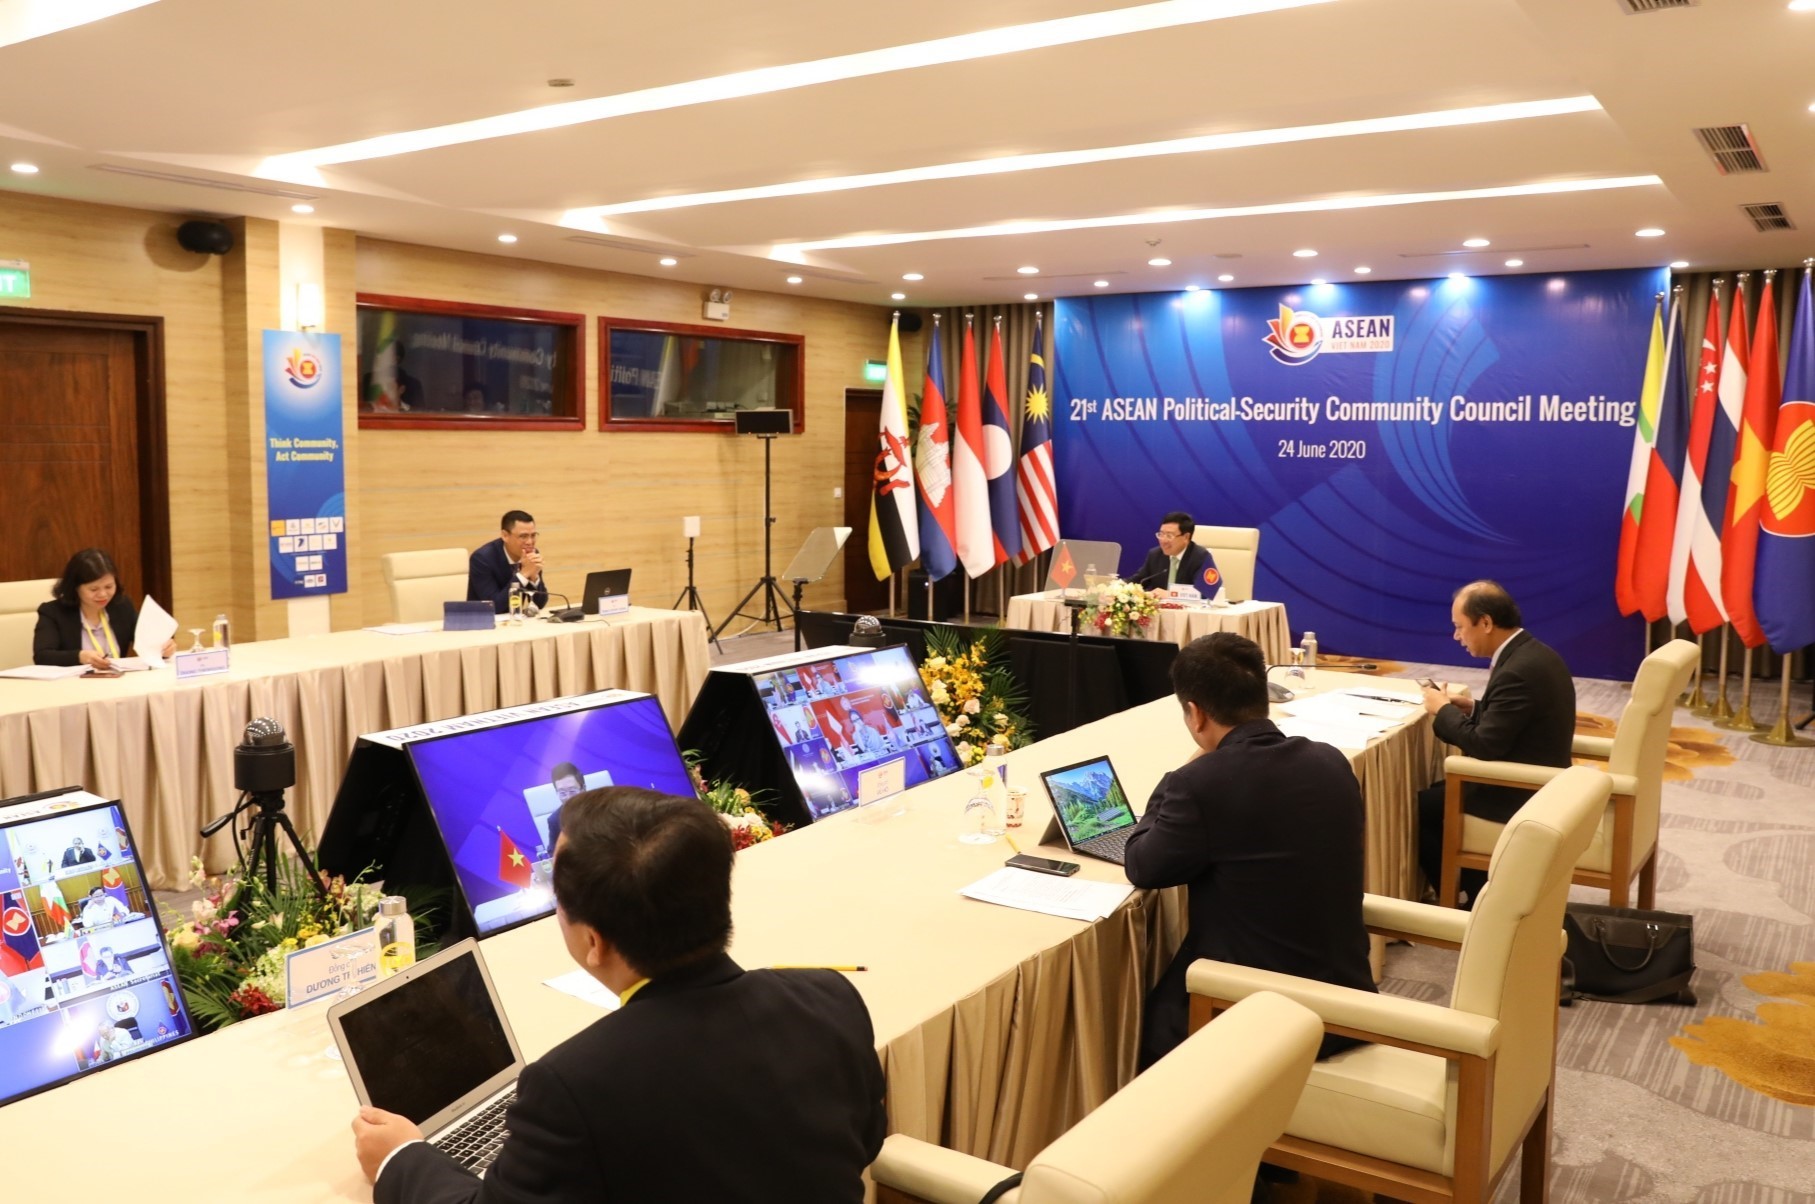 Quang cảnh Hội nghị trực tuyến Hội đồng Chính trị-An ninh ASEAN lần thứ 21 tại điểm cầu Trung tâm Hội nghị quốc tế (Hà Nội)sáng 24/6/2020. (Ảnh: Văn Điệp/TTXVN)